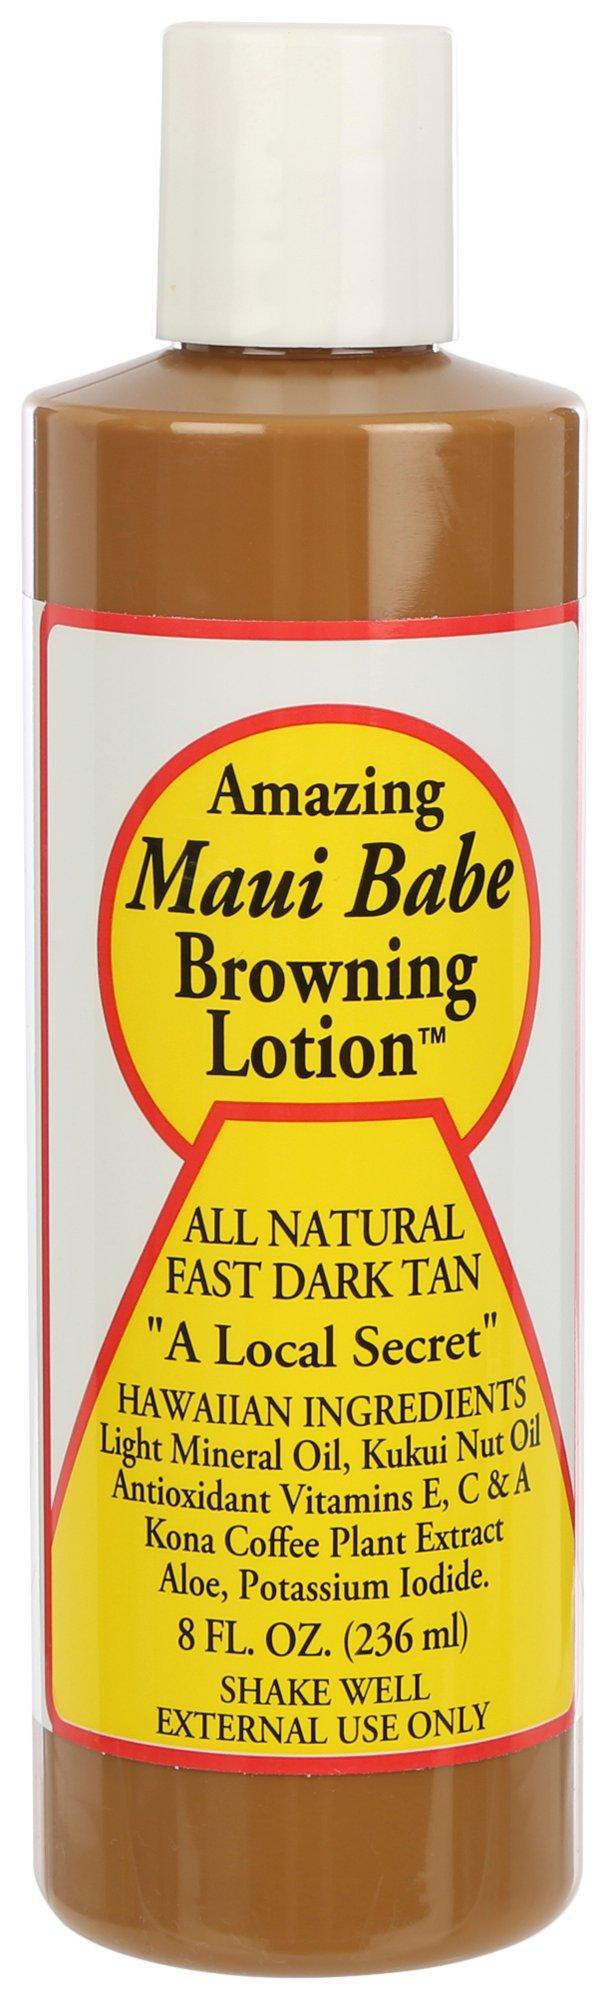 8 Fl.Oz. All Natural Dark Tan Browning Lotion